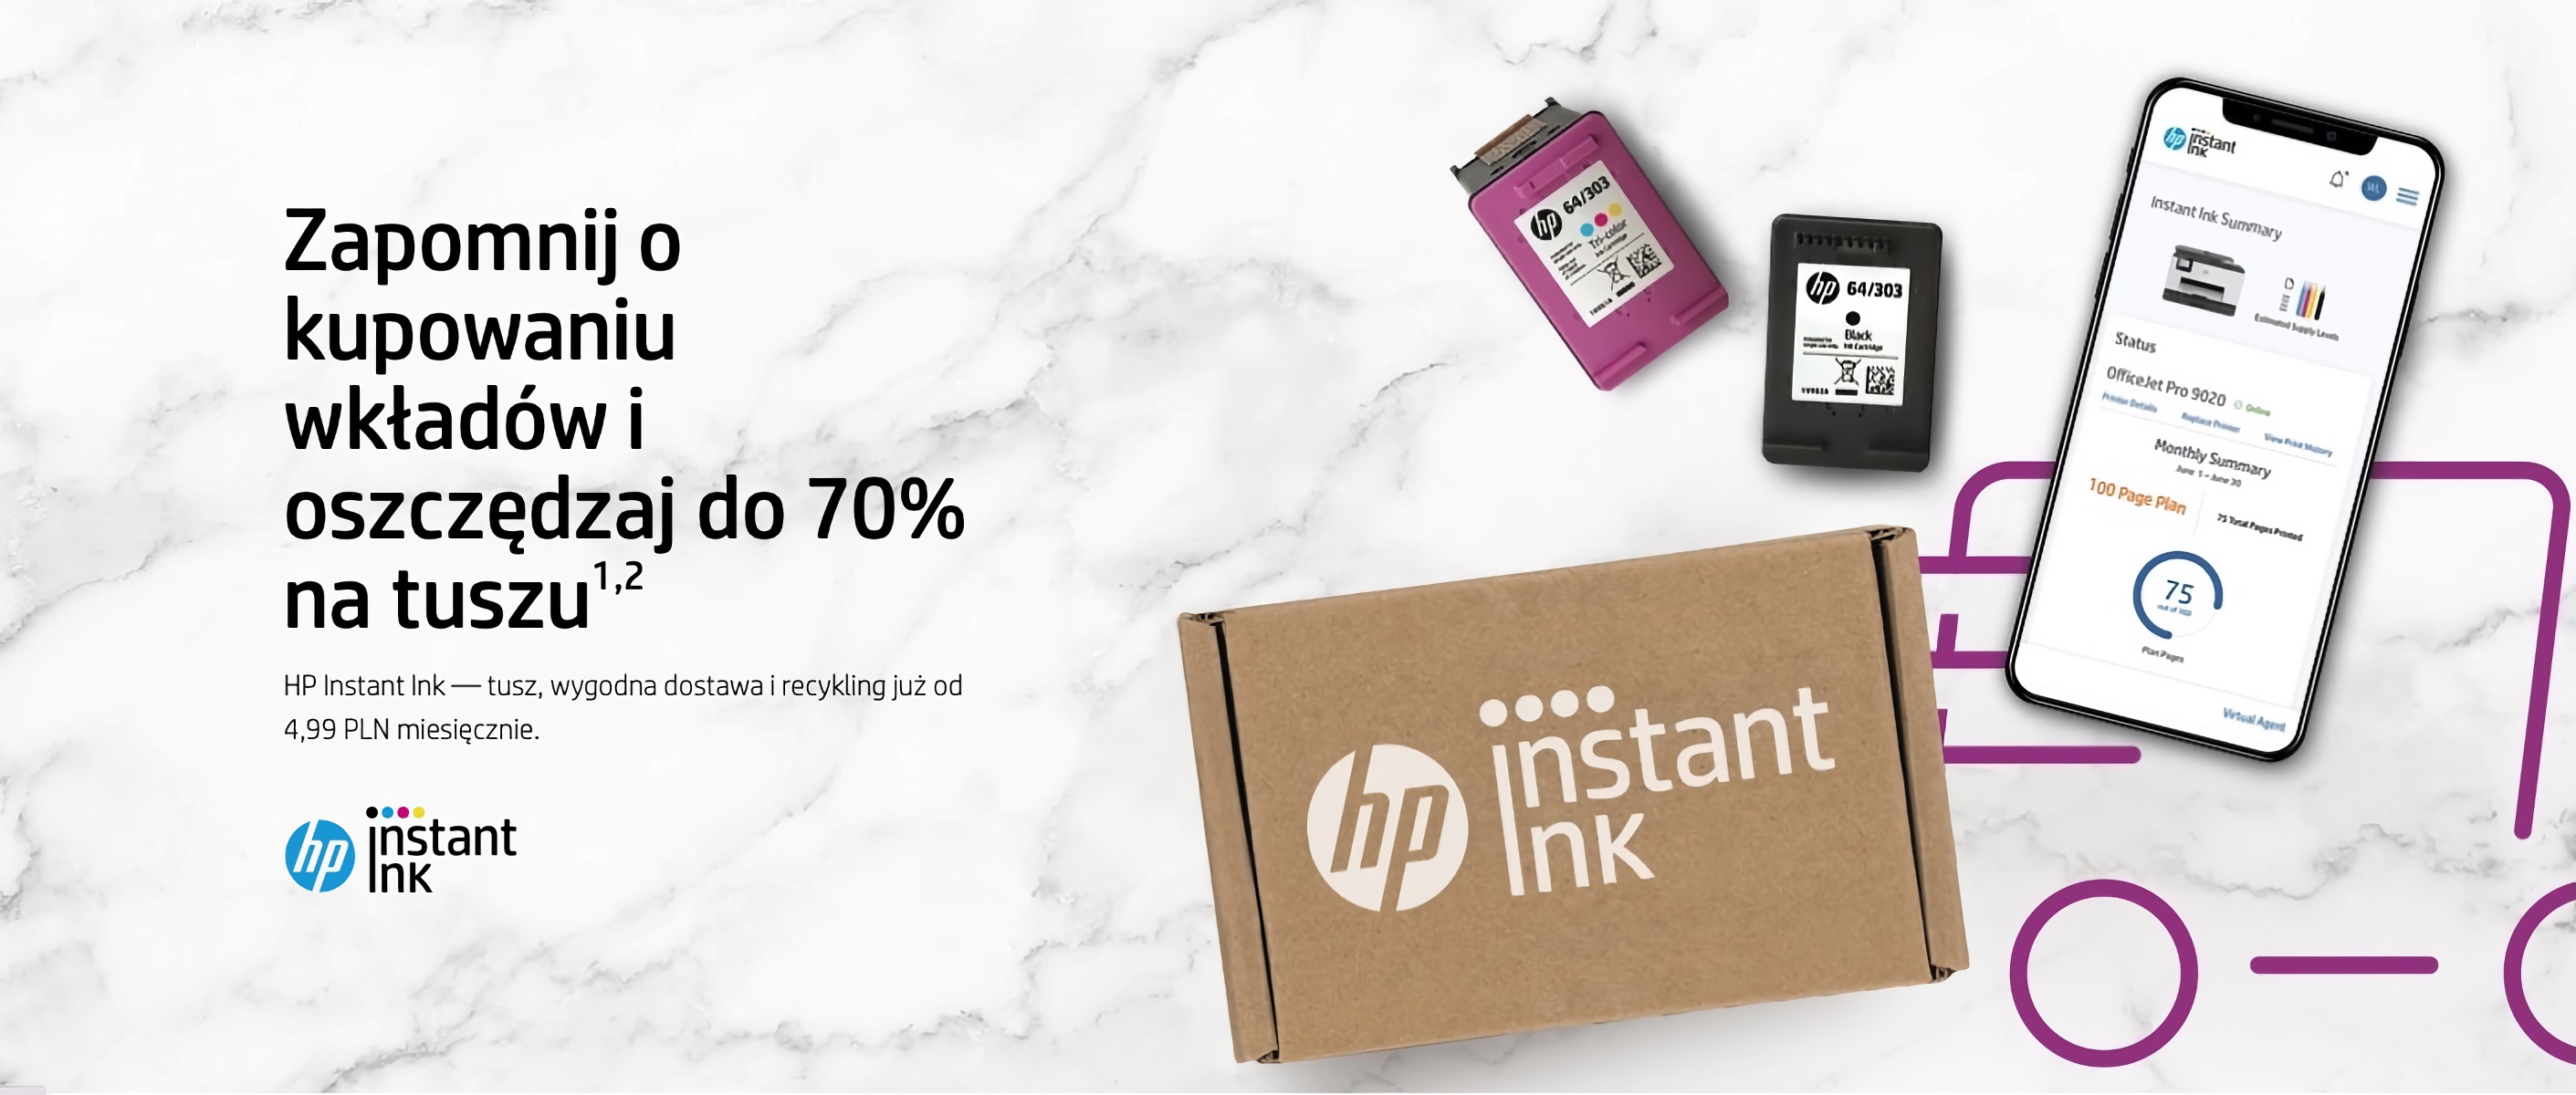 HP Instant Ink – oszczędzanie na tuszu